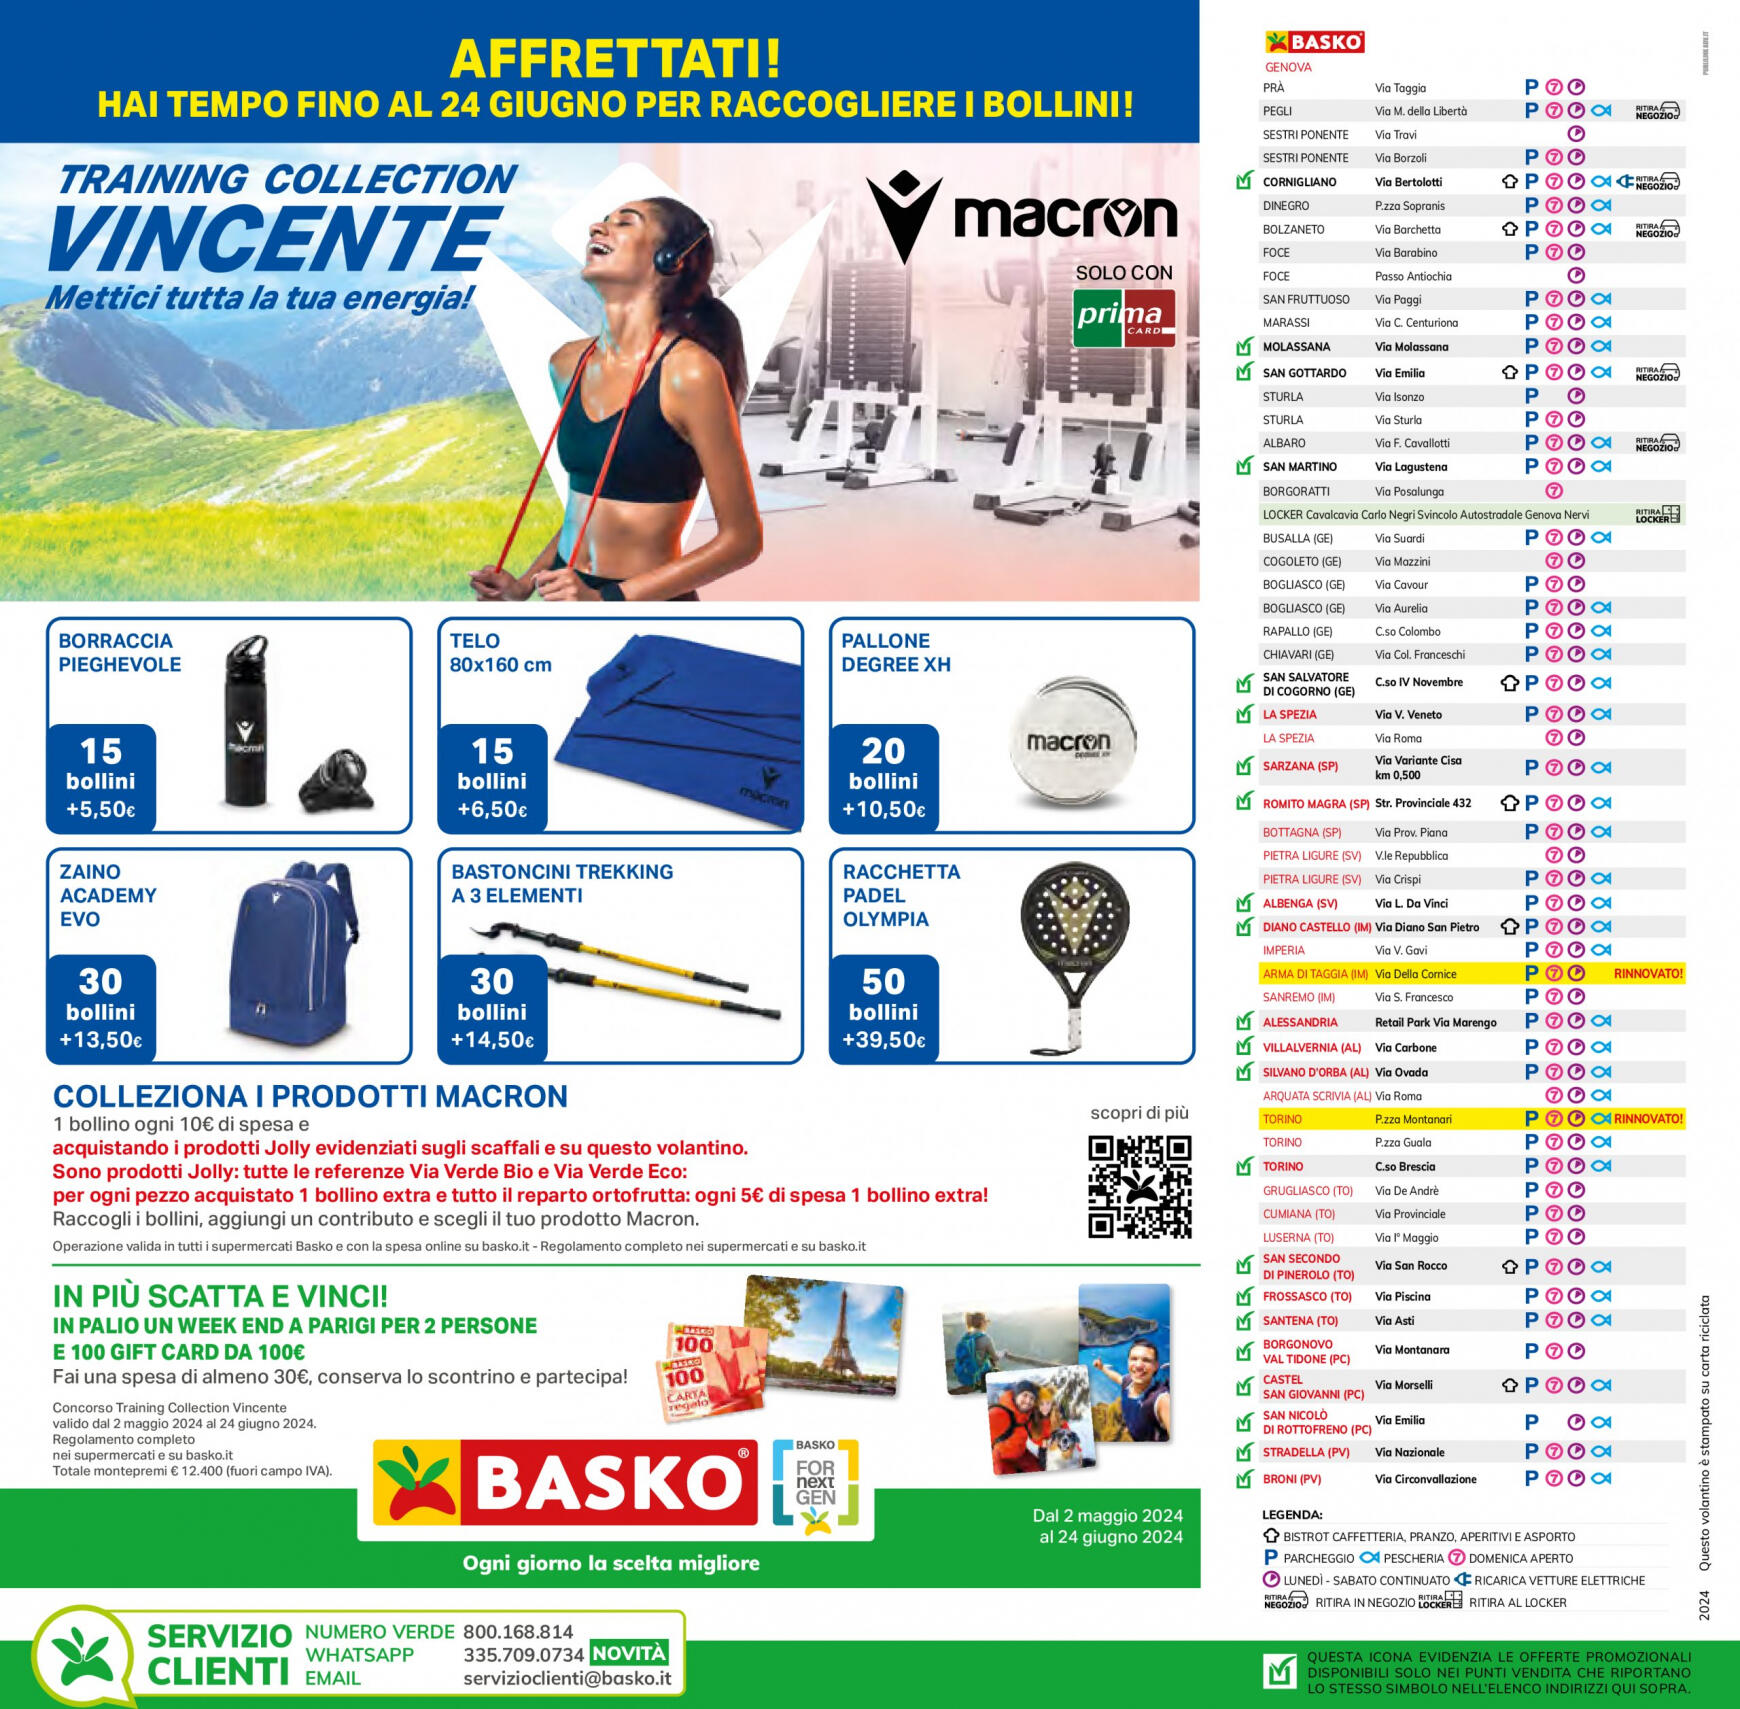 basko - Nuovo volantino Basko - Più Bassi 11.06. - 24.06. - page: 34